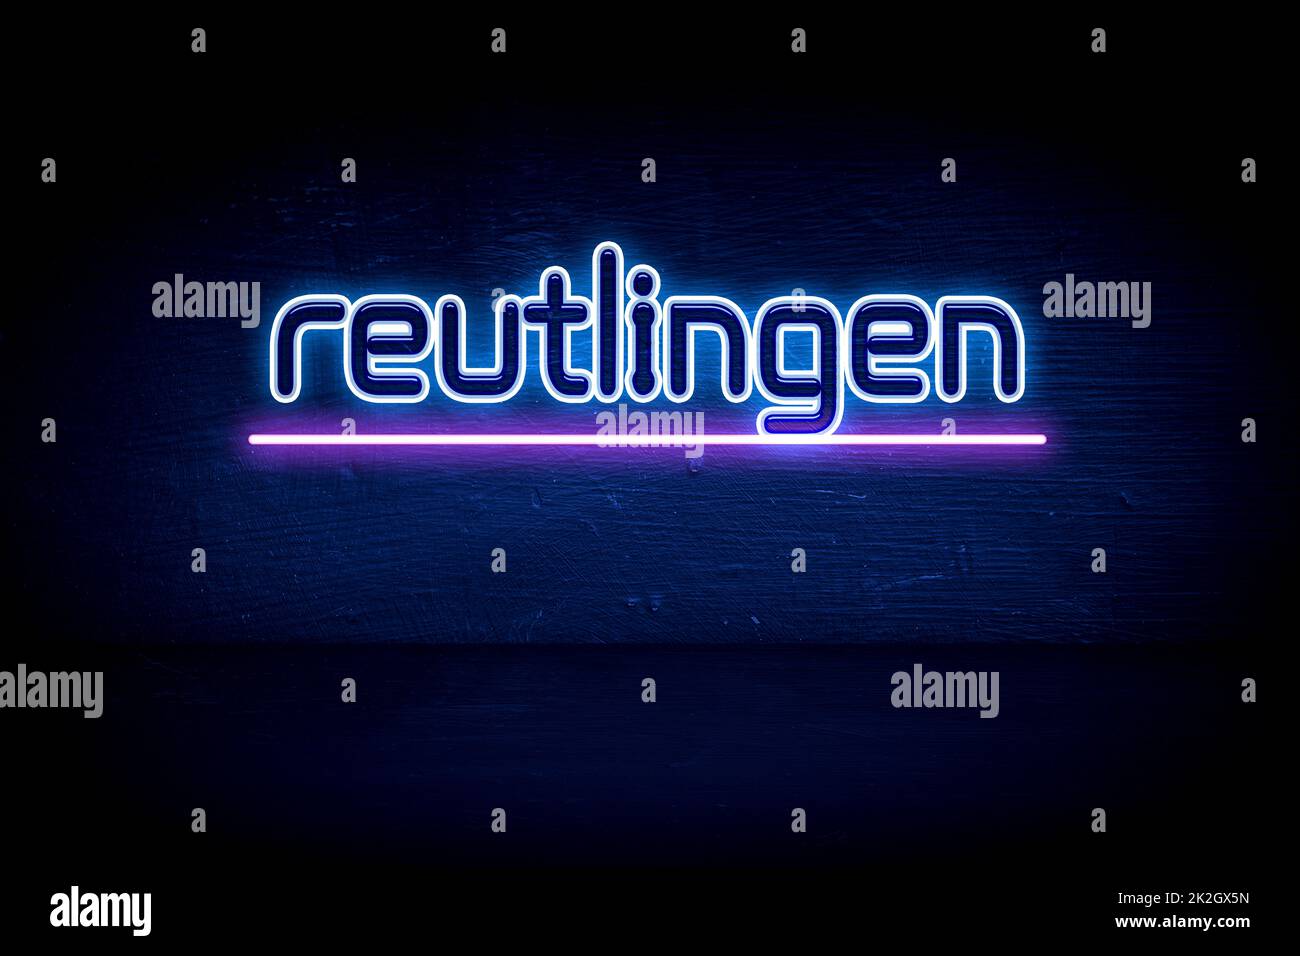 Reutlingen - panneau d'annonce au néon bleu Banque D'Images